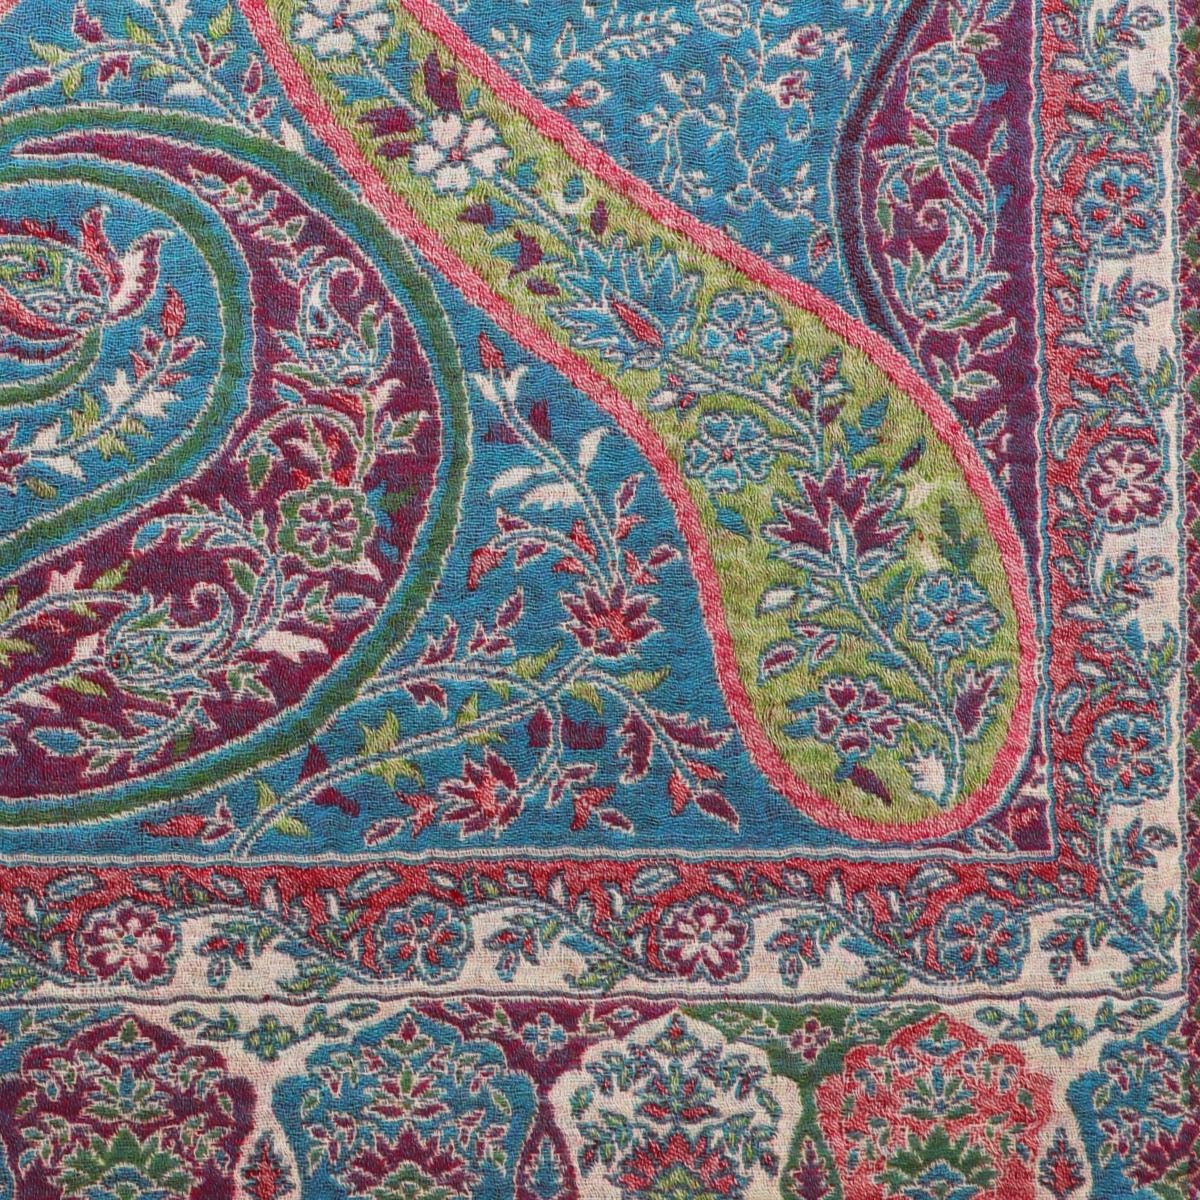 喀什米爾羊毛精品圍巾 - 取自大自然的禮讚，Kashmir工藝之美顛覆你所認知的喀什米爾羊毛圍巾 6